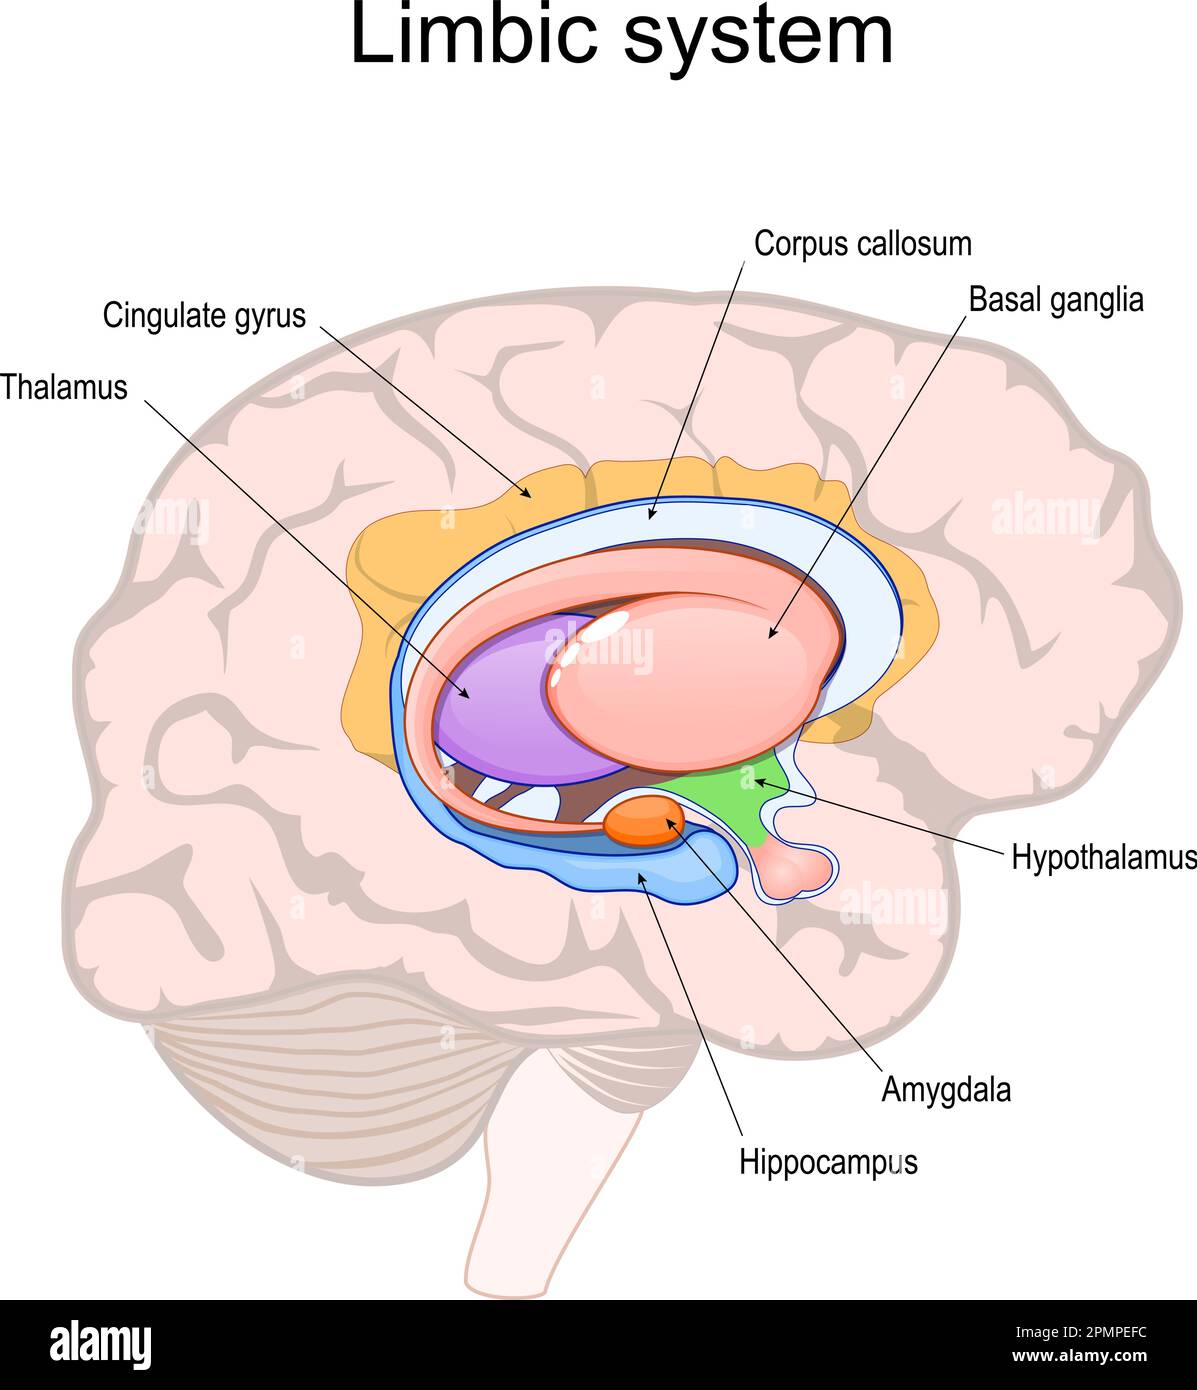 Limbisches System. Querschnitt des menschlichen Gehirns. Struktur und anatomische Komponenten des limbischen Systems: Hypothalamus, Corpus callosum, Gyrus cingularis, Stock Vektor